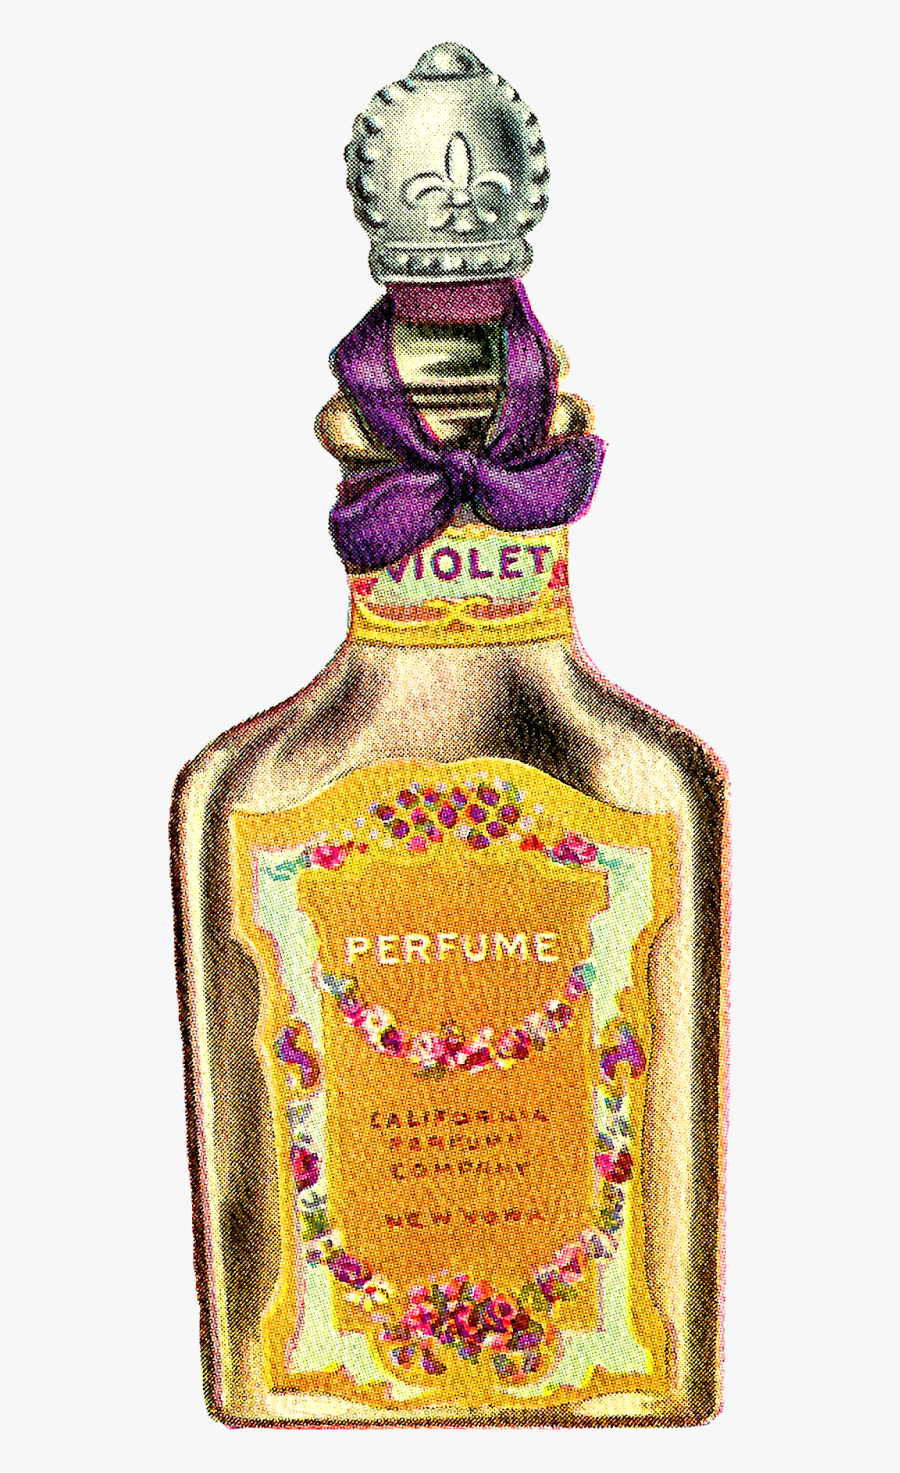 Vintage Perfume Bottle Png, Transparent Clipart